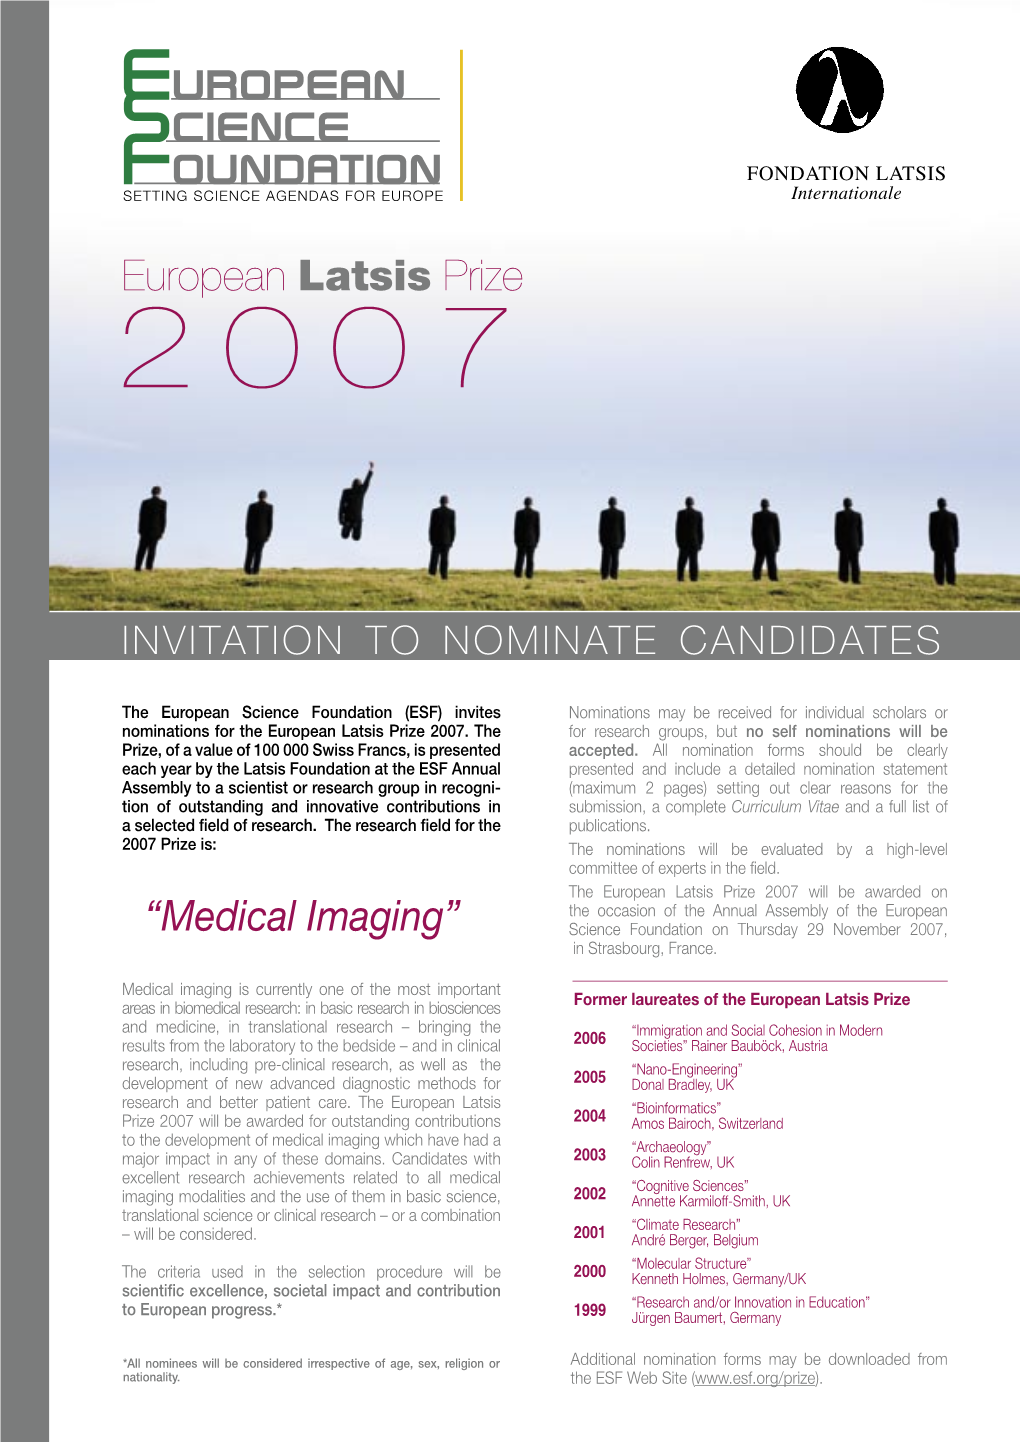 European Latsis Prize “Medical Imaging”